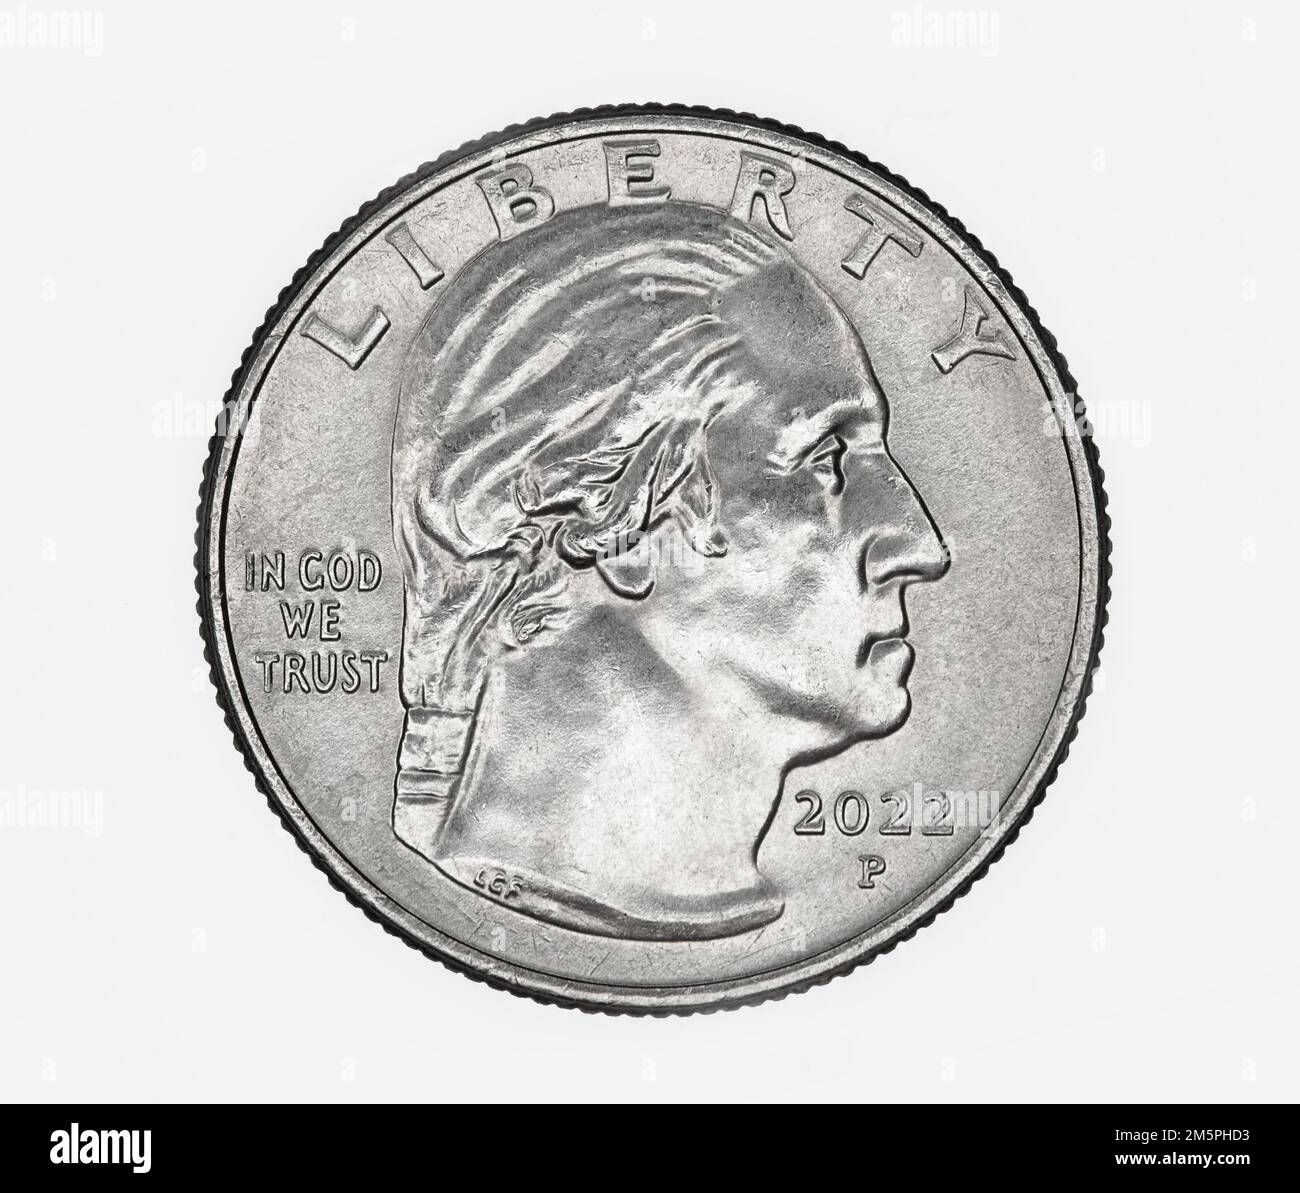 Ritratto aggiornato di George Washington sulla moneta da un quarto di dollaro statunitense del 2022 Foto Stock